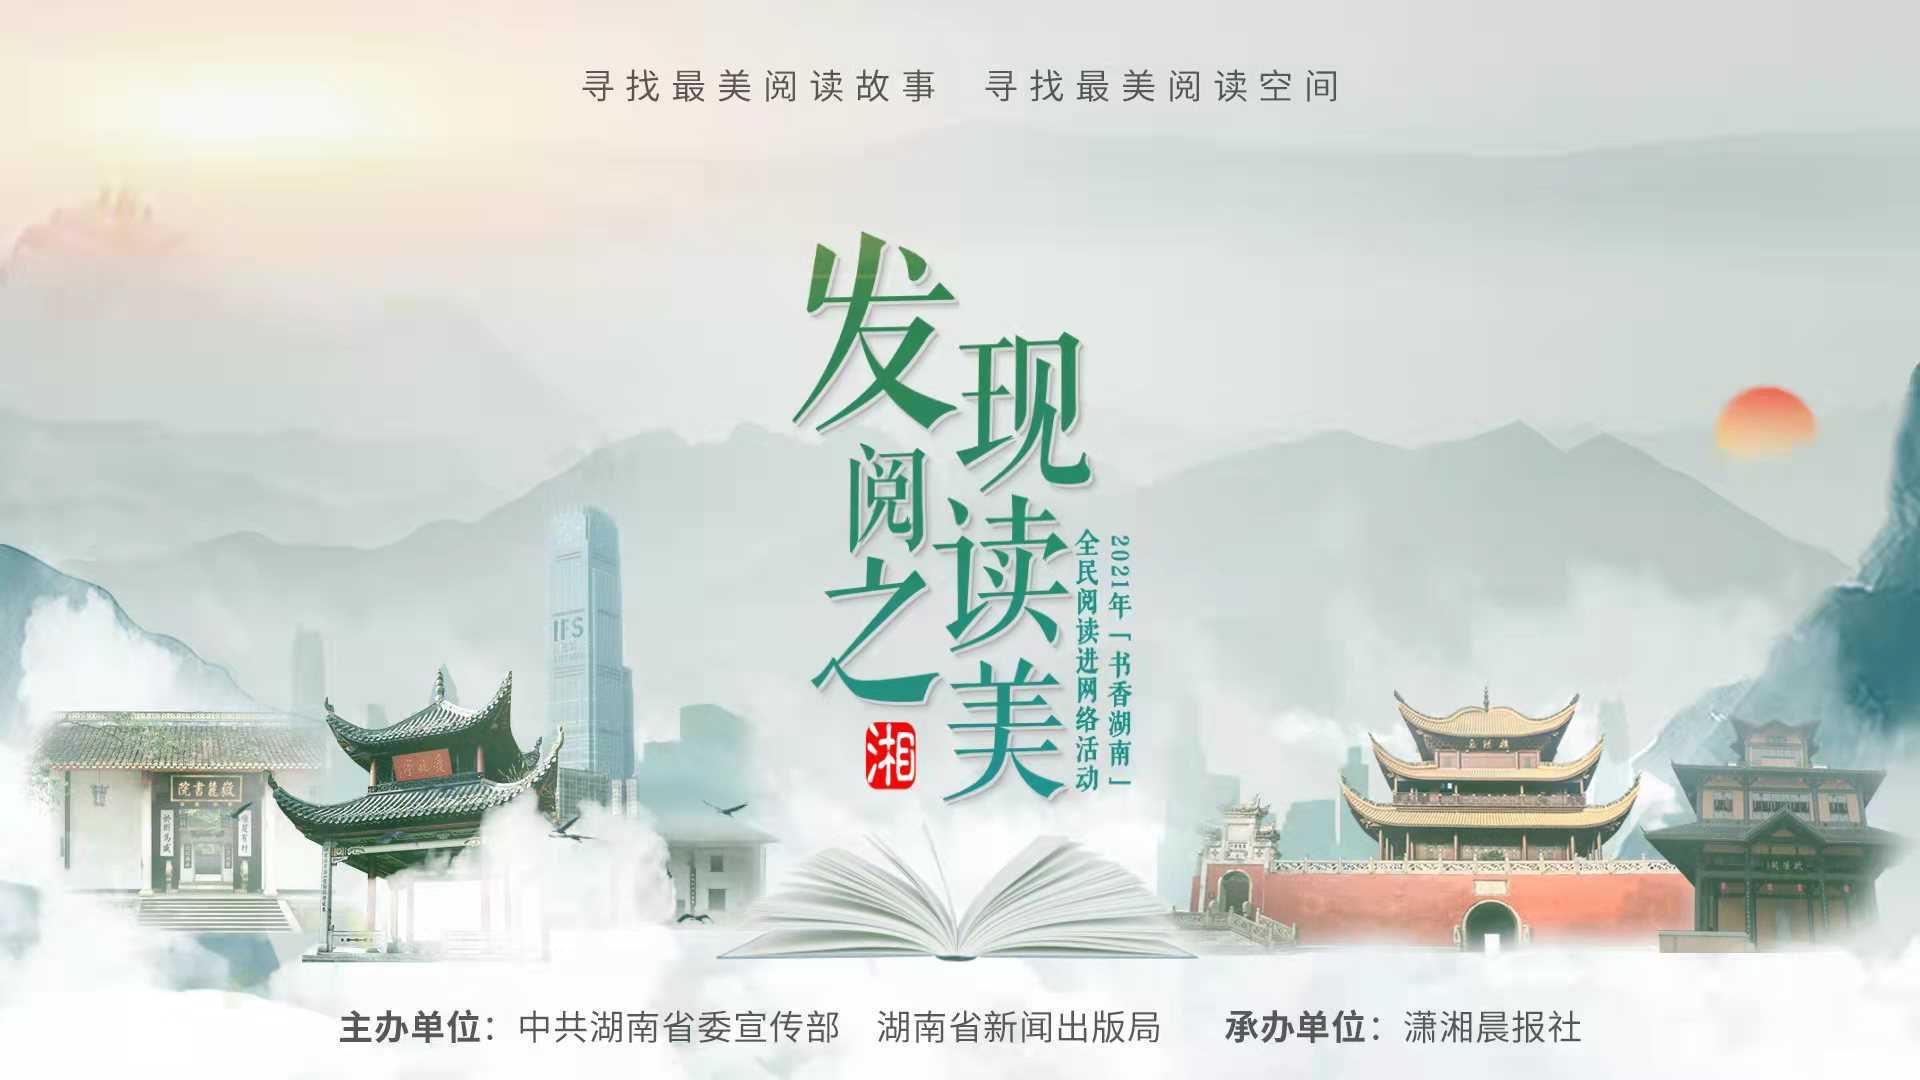 杨雨为"发现阅读之美"2021“书香湖南”全民阅读进网络活动发声